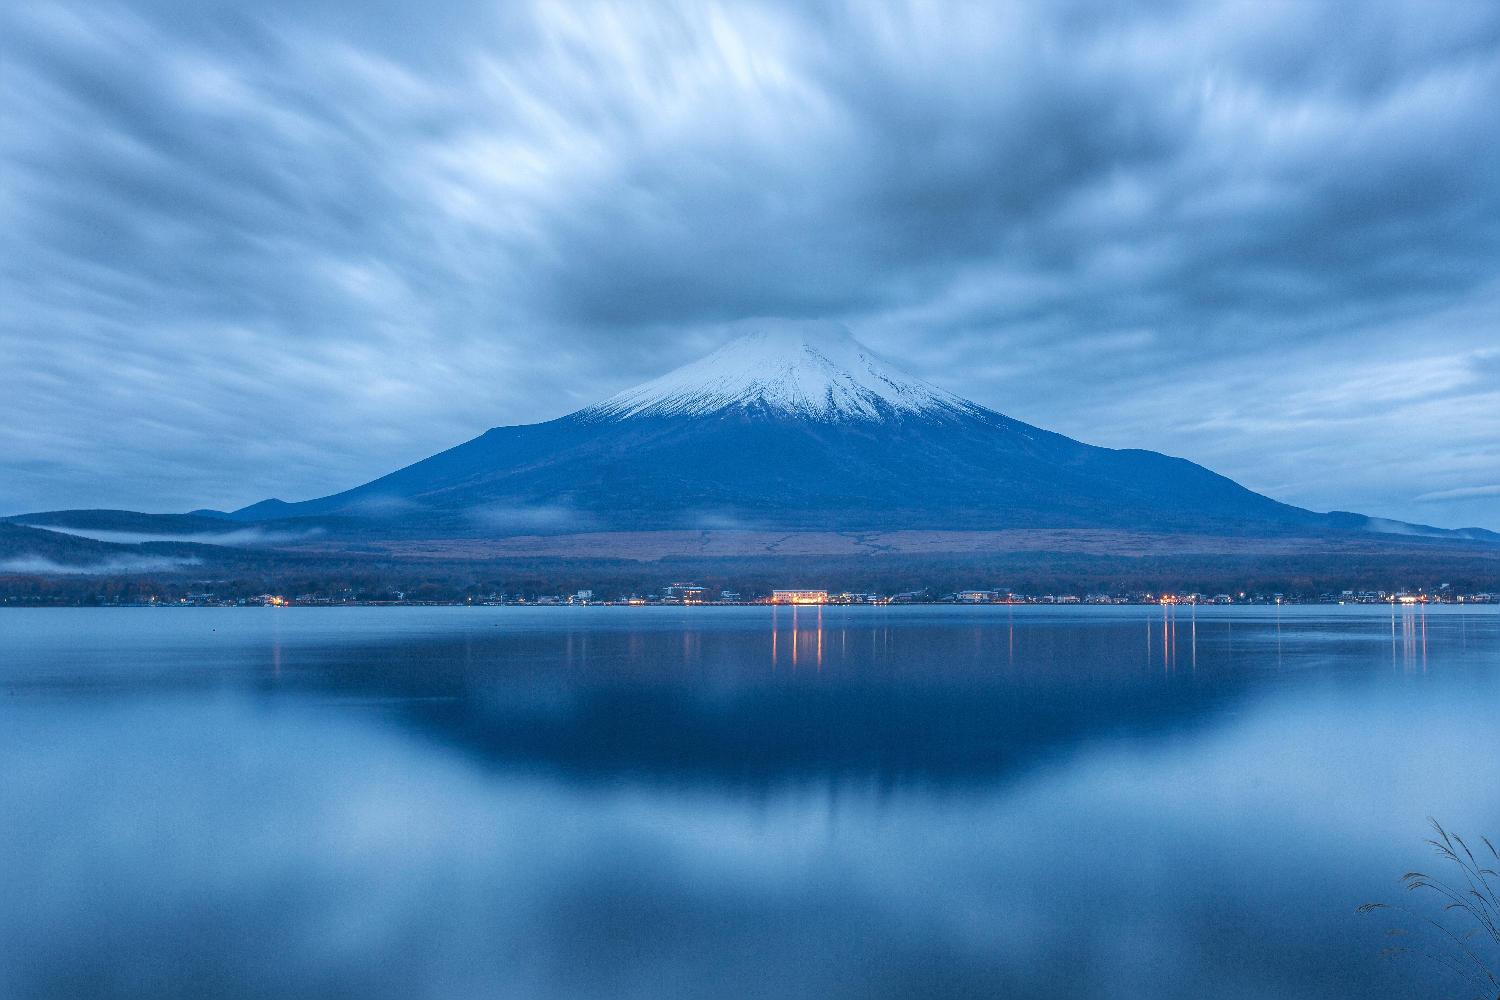 【张力视觉】最美的季节,在日本相遇,富士山旅游攻略